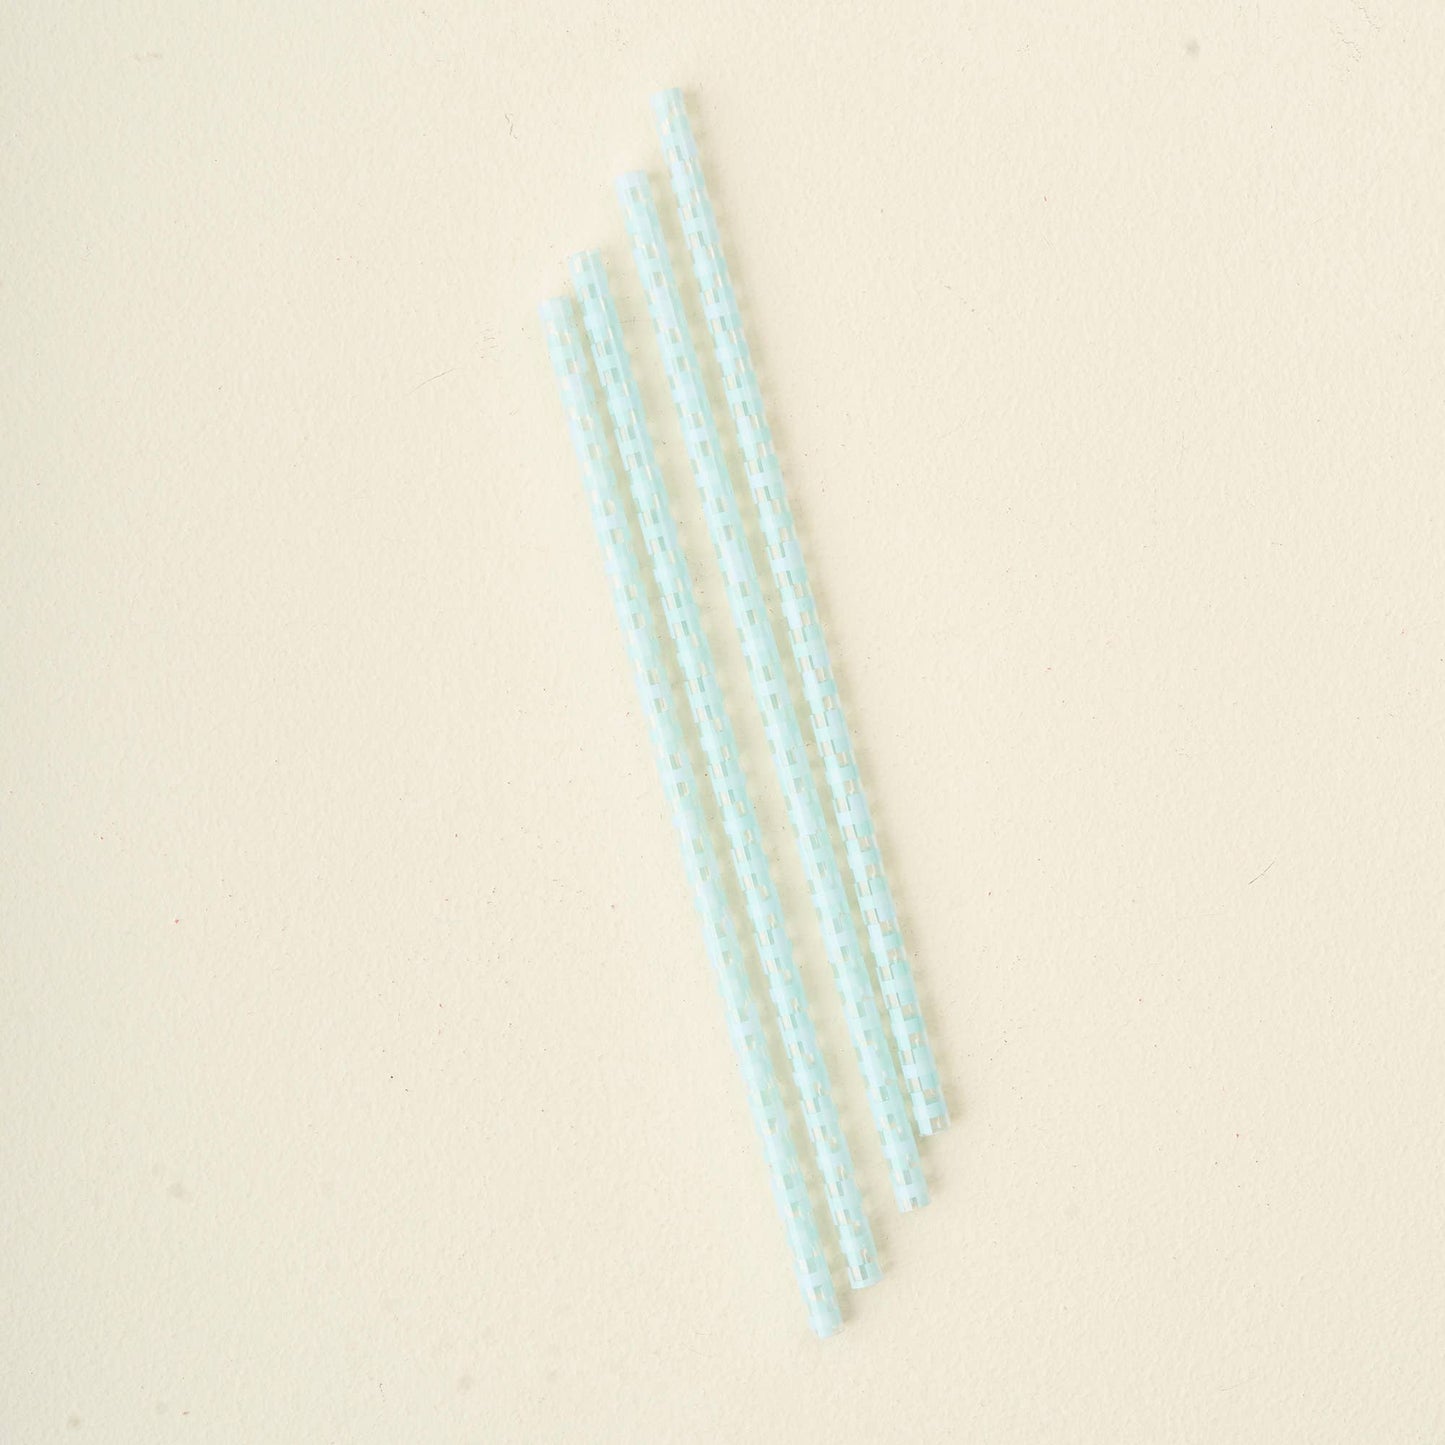 40 oz Tumbler Straws